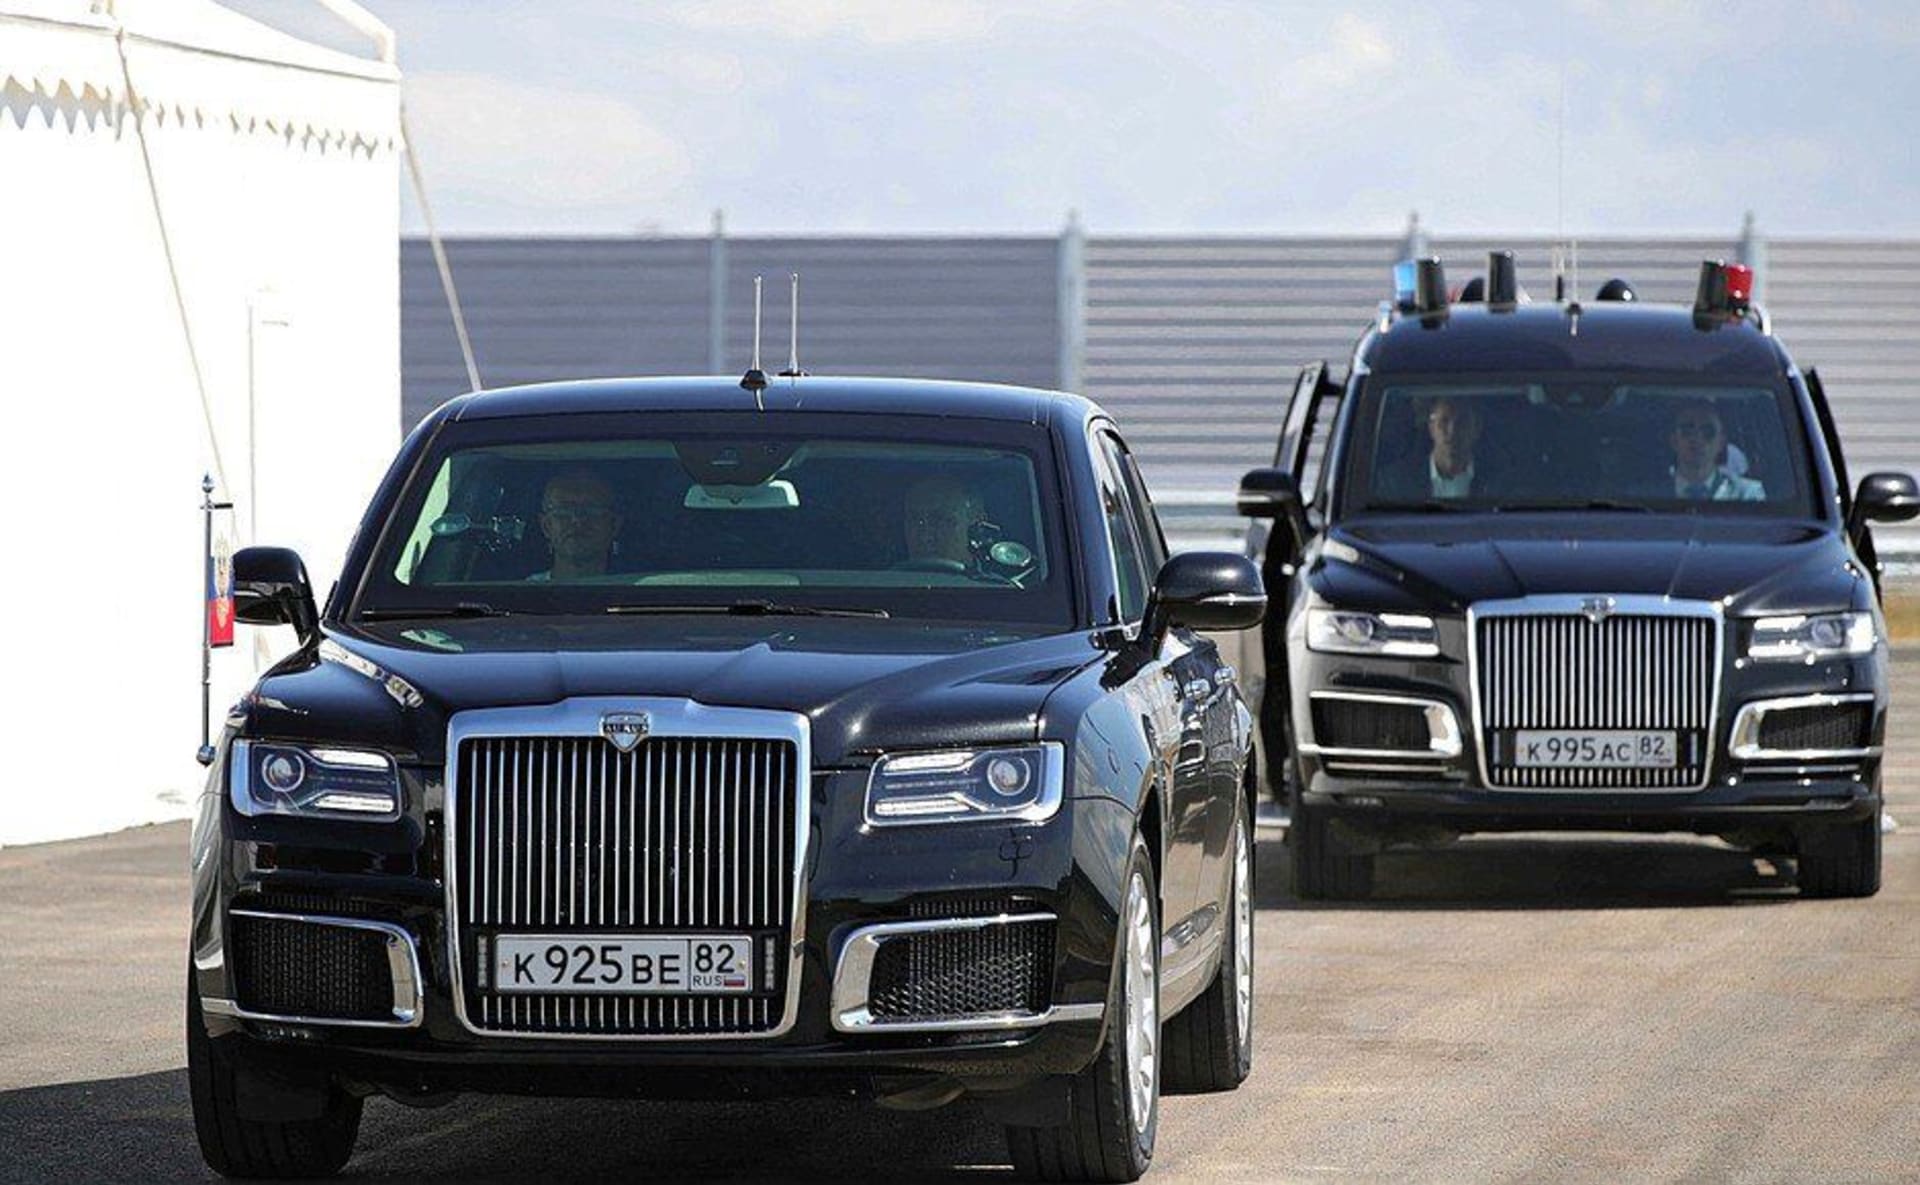 Ruský prezident při otevření nového úseku dálnice Tavrida na Krymu. Pancéřovanou limuzínu řídil on sám.